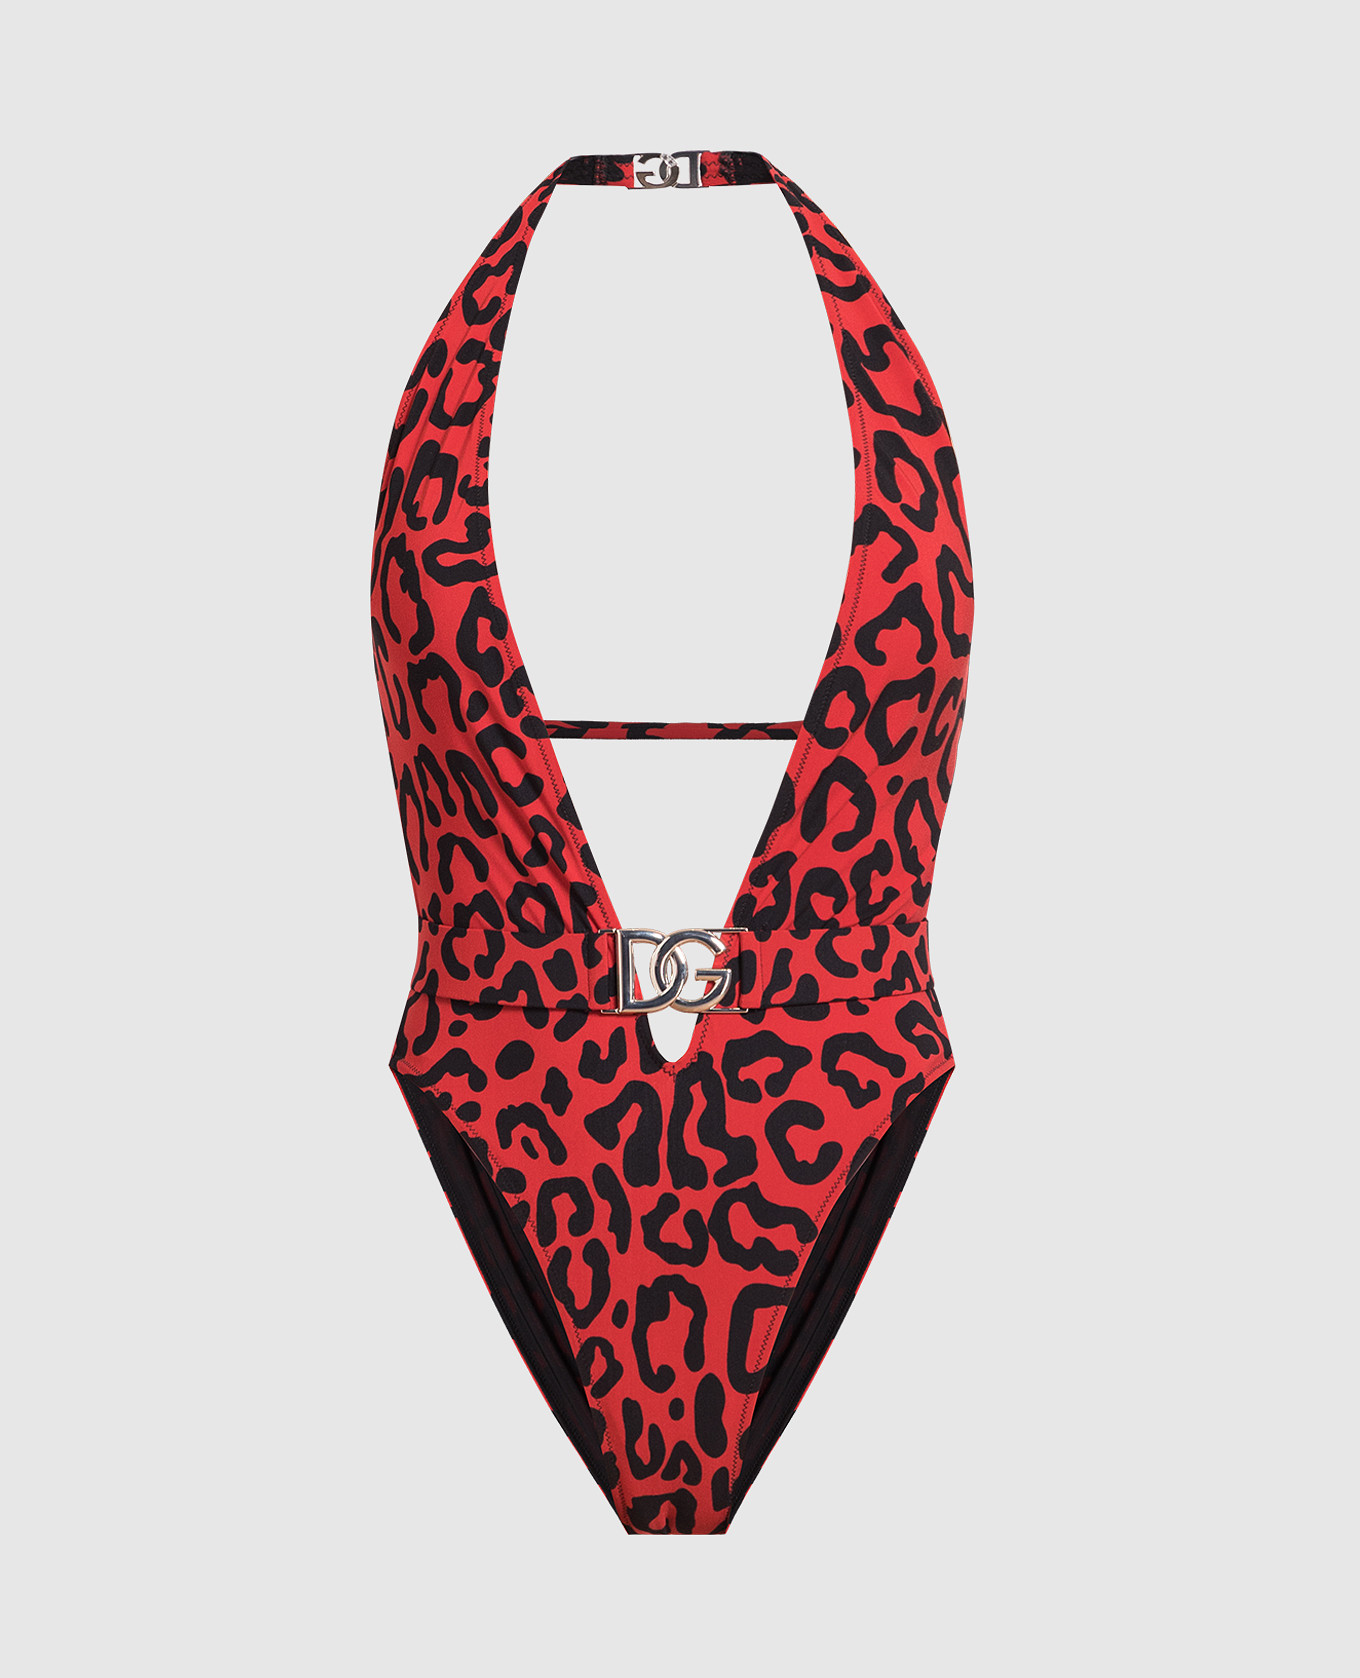 Красный купальник в леопардовый принт.